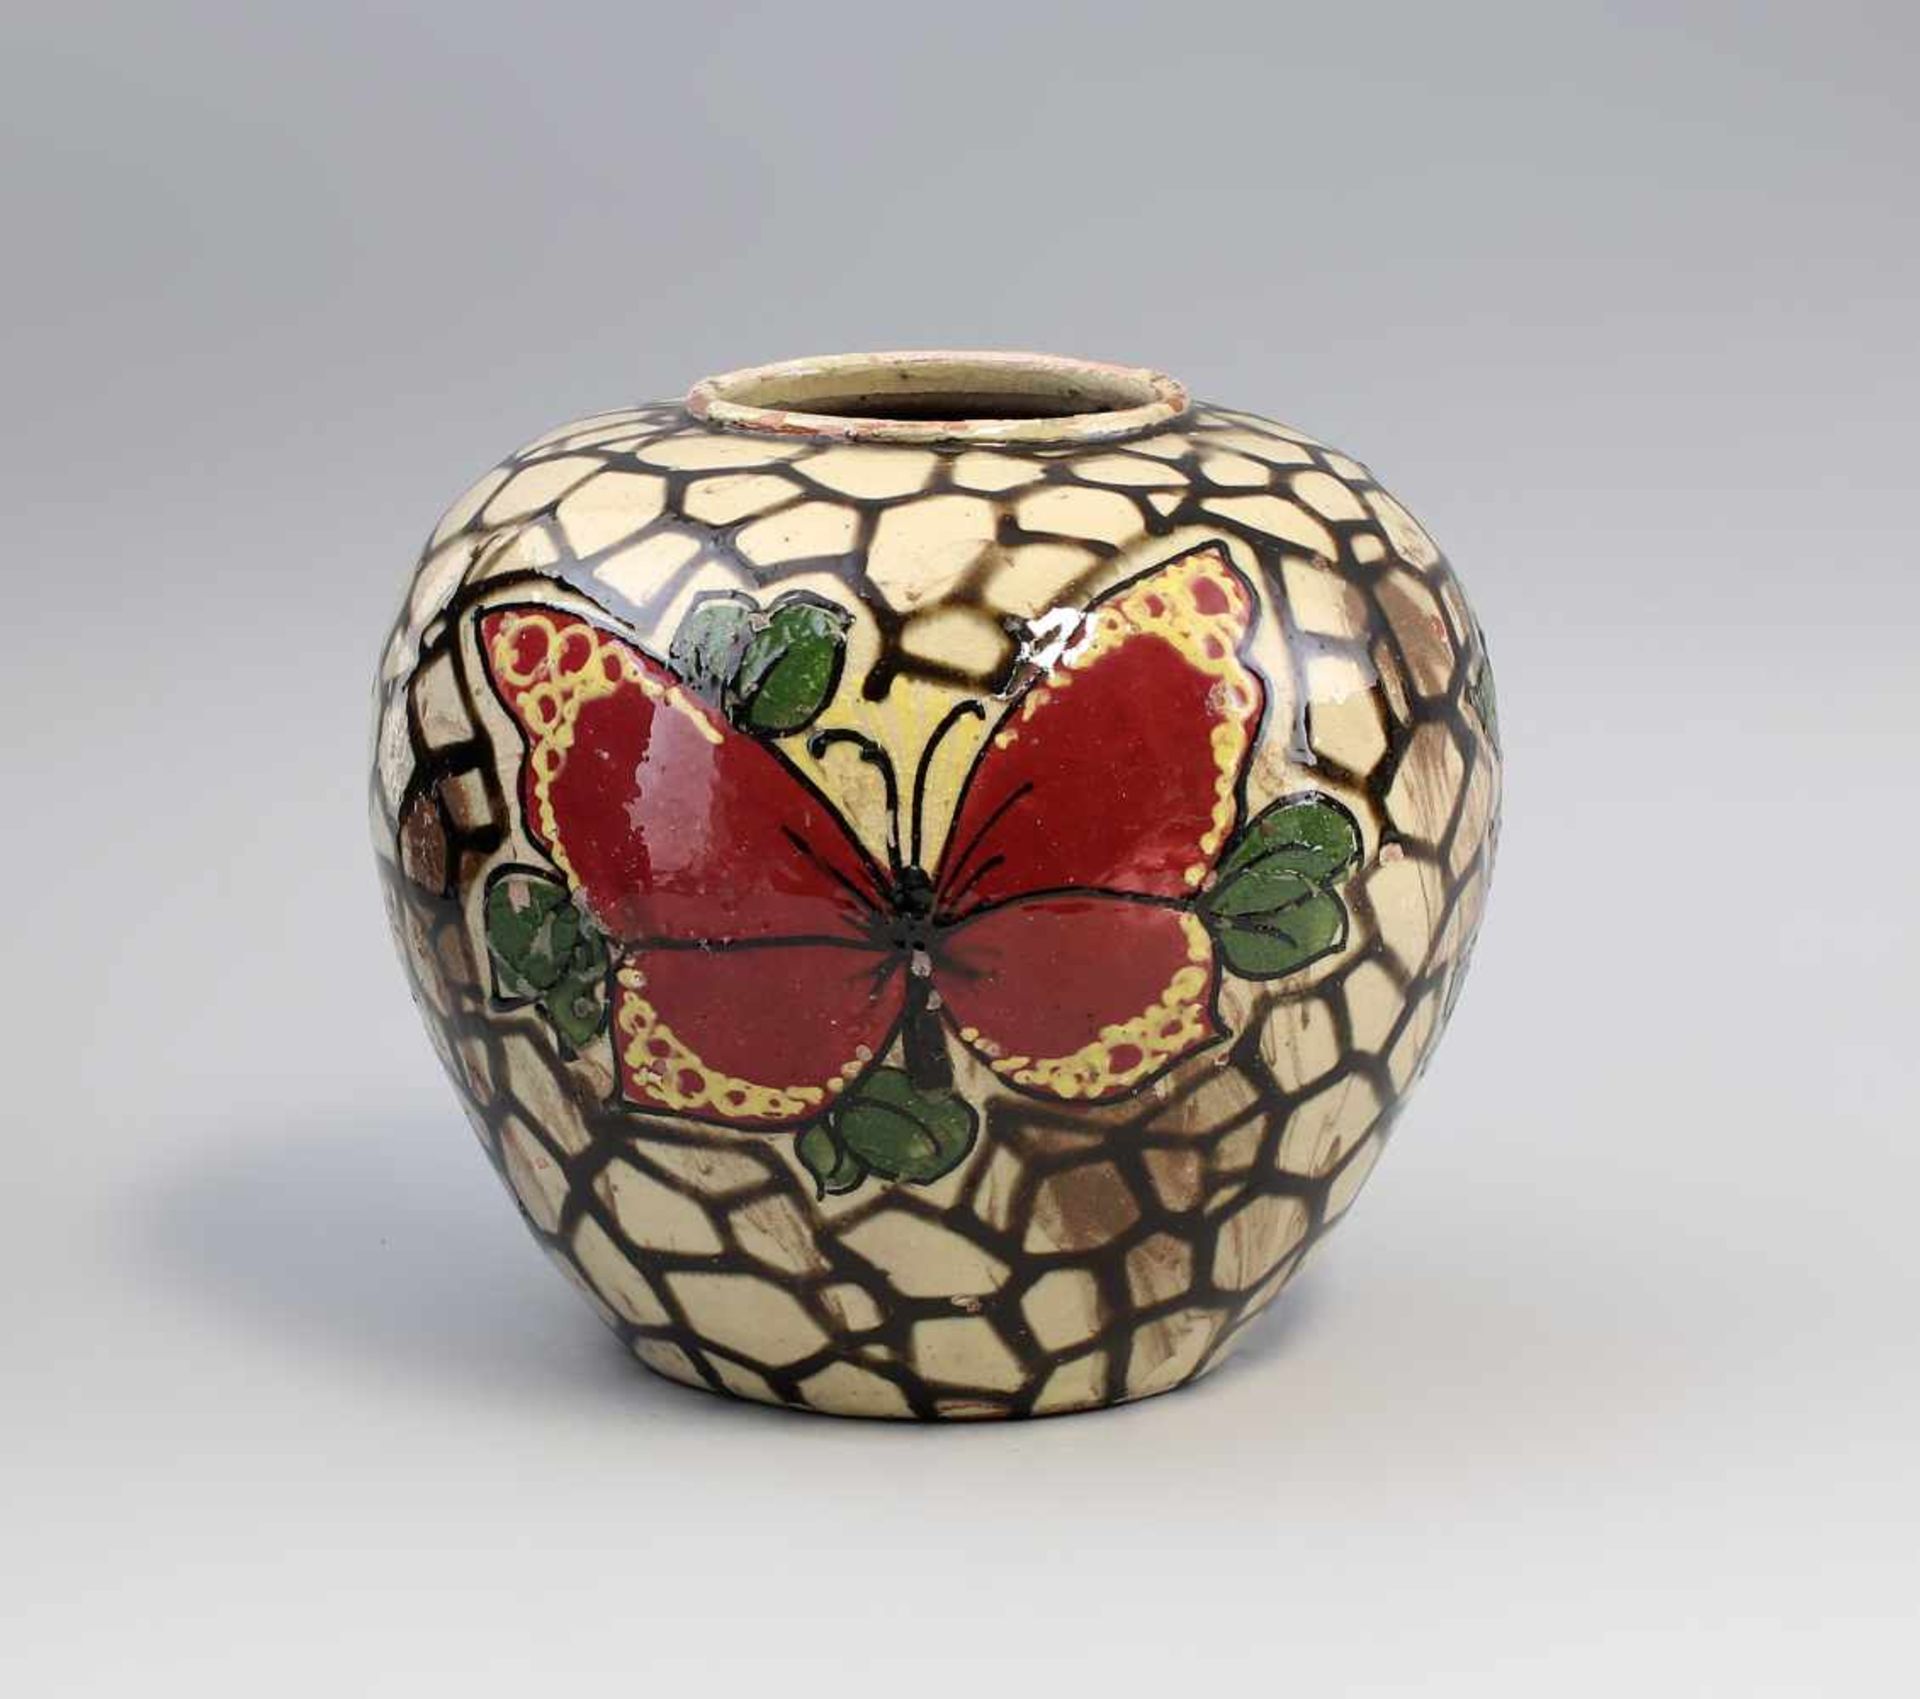 Jugendstil-Vase Schmetterling undeutliche Prägeinschrift/Marke, wohl um 1900, rotbrauner Scherben,